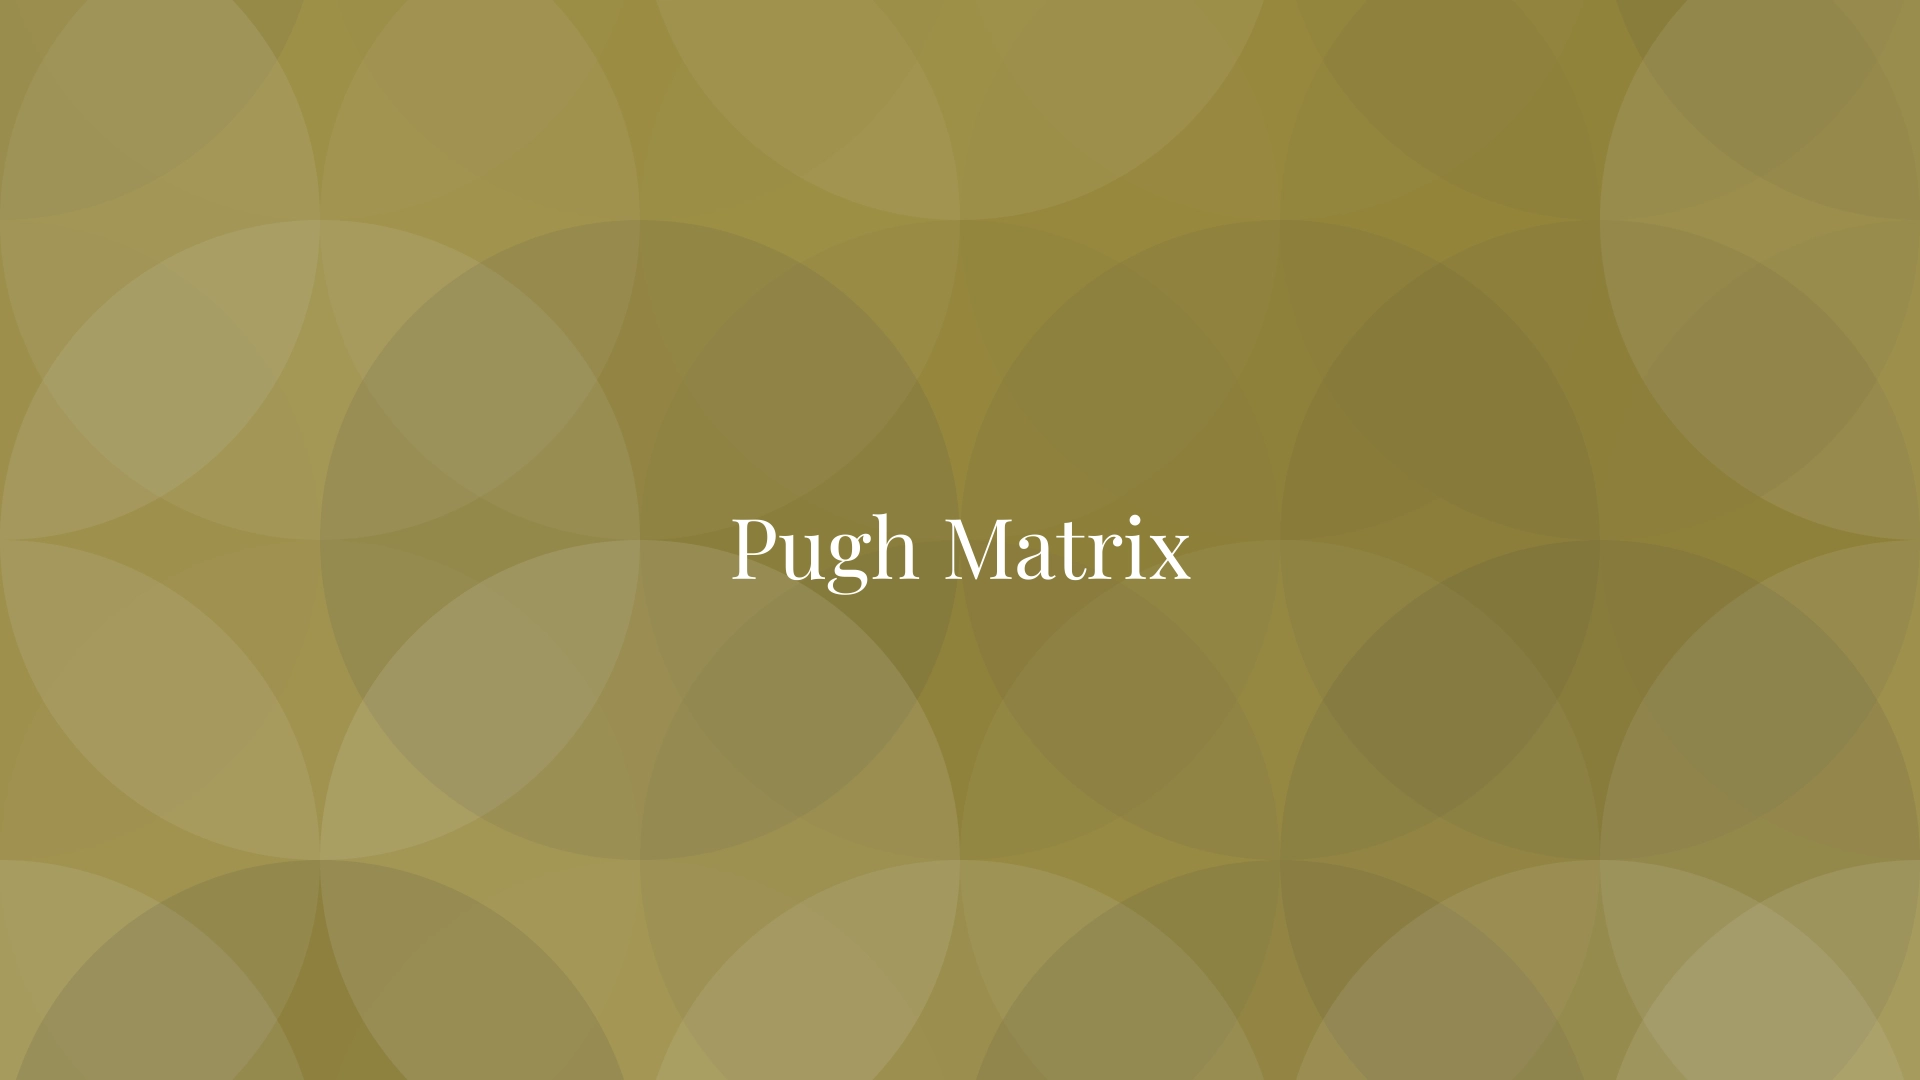 Pugh Matrix